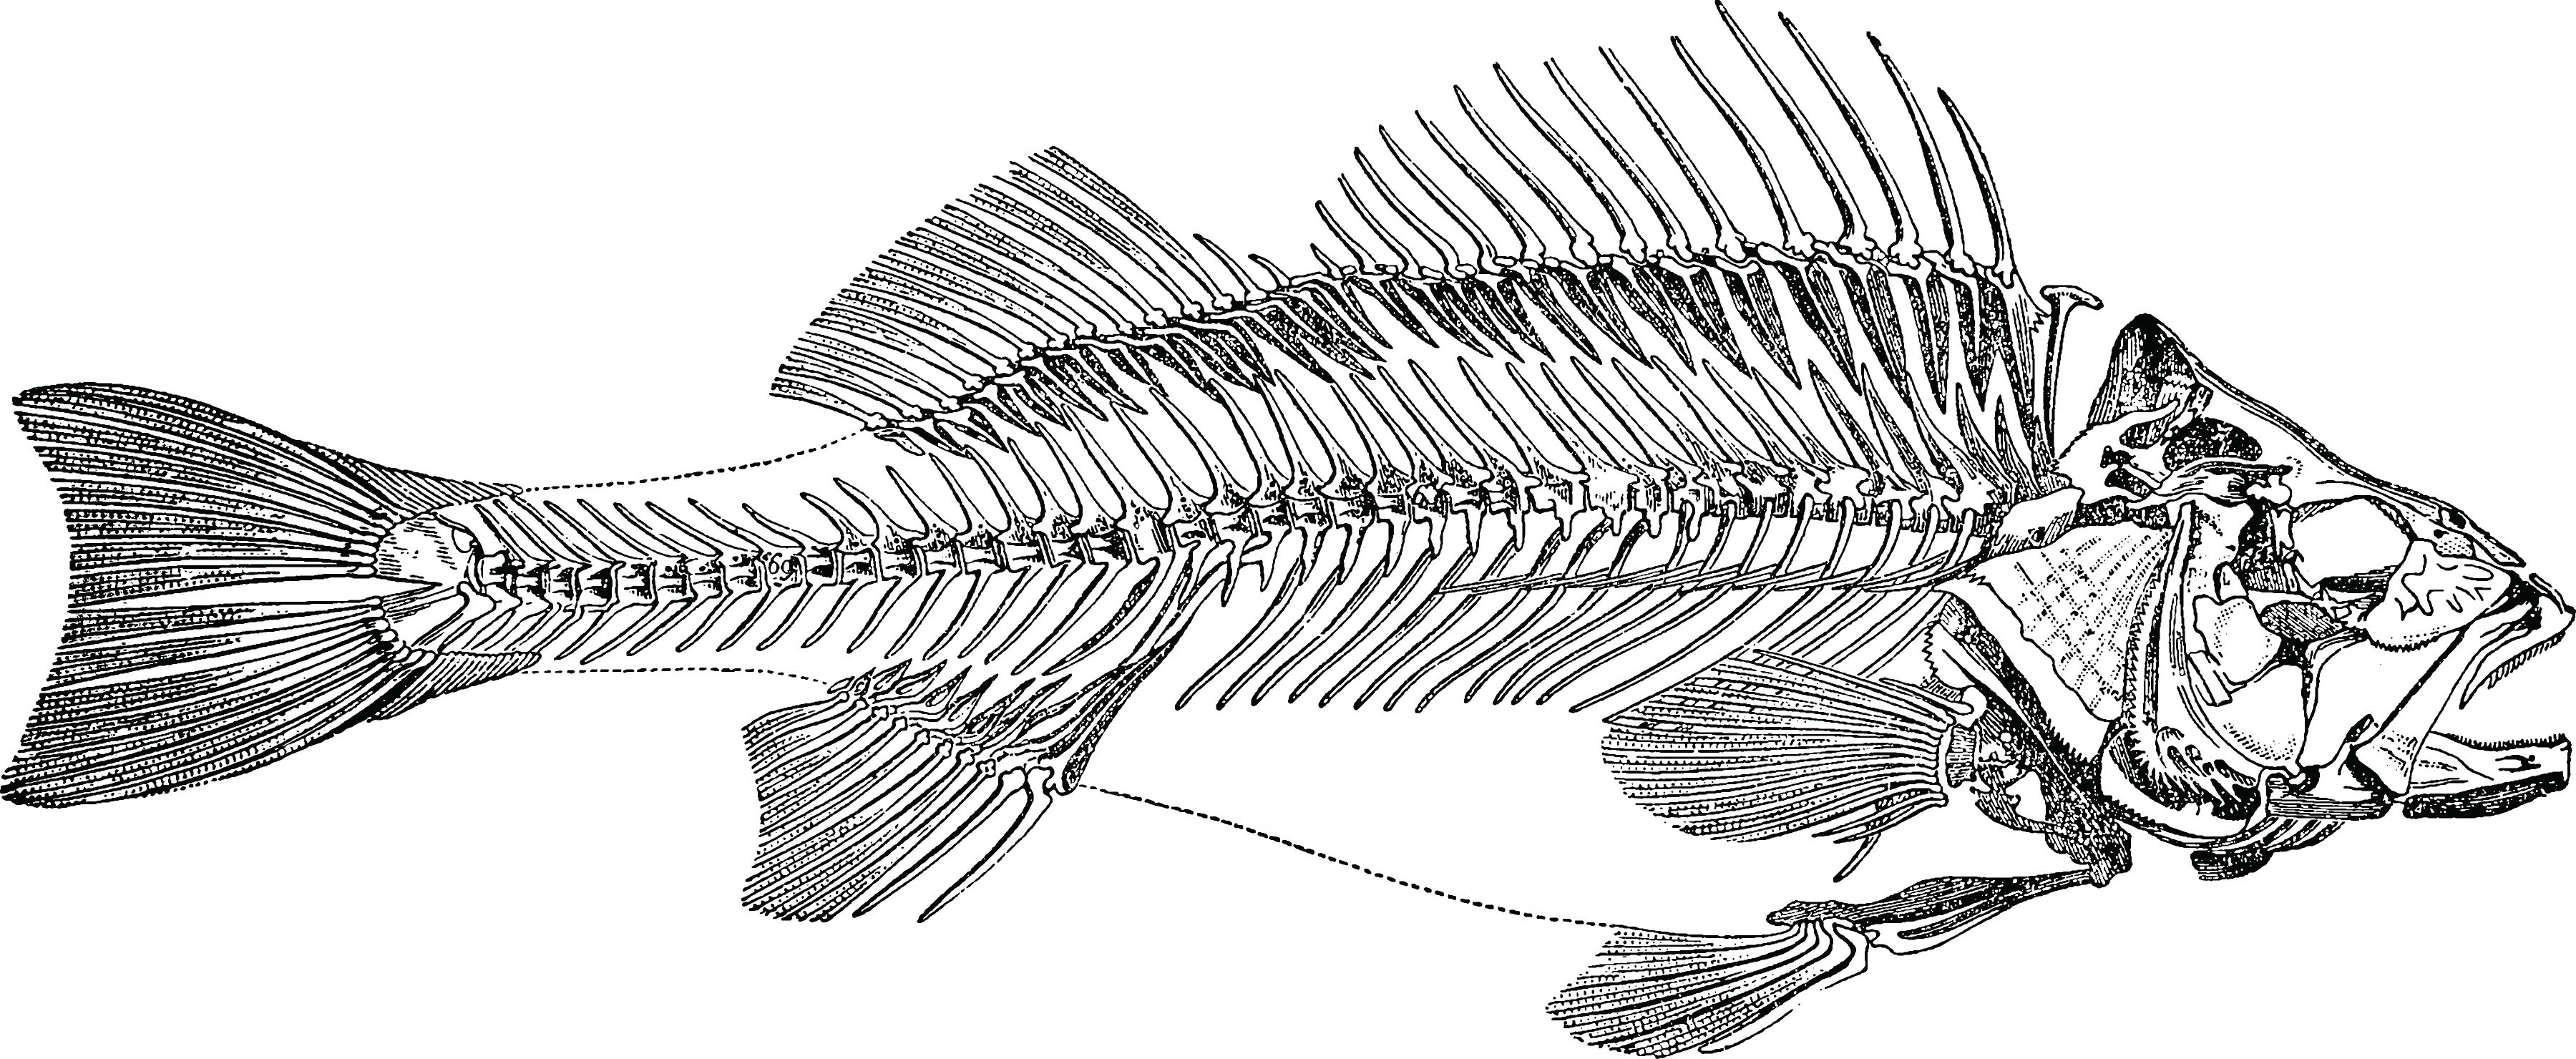 Knochenfisch Skelett